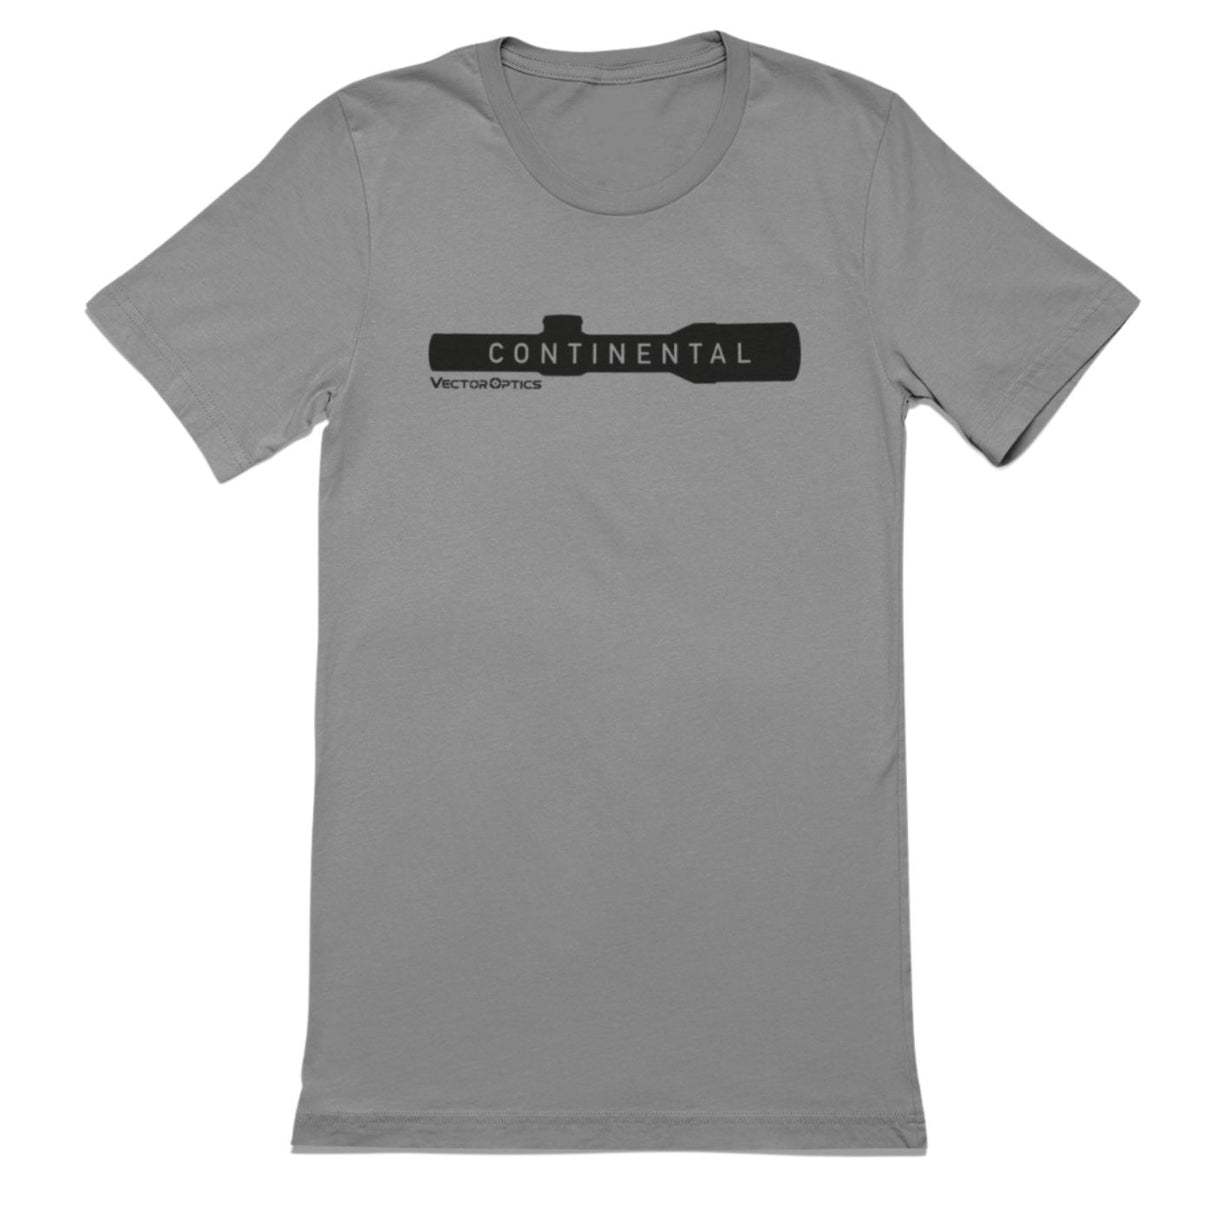 Vector Optics SCTS-01 T-Shirt Grau mit Schriftzug "Continental" Vector Optics Shop S 